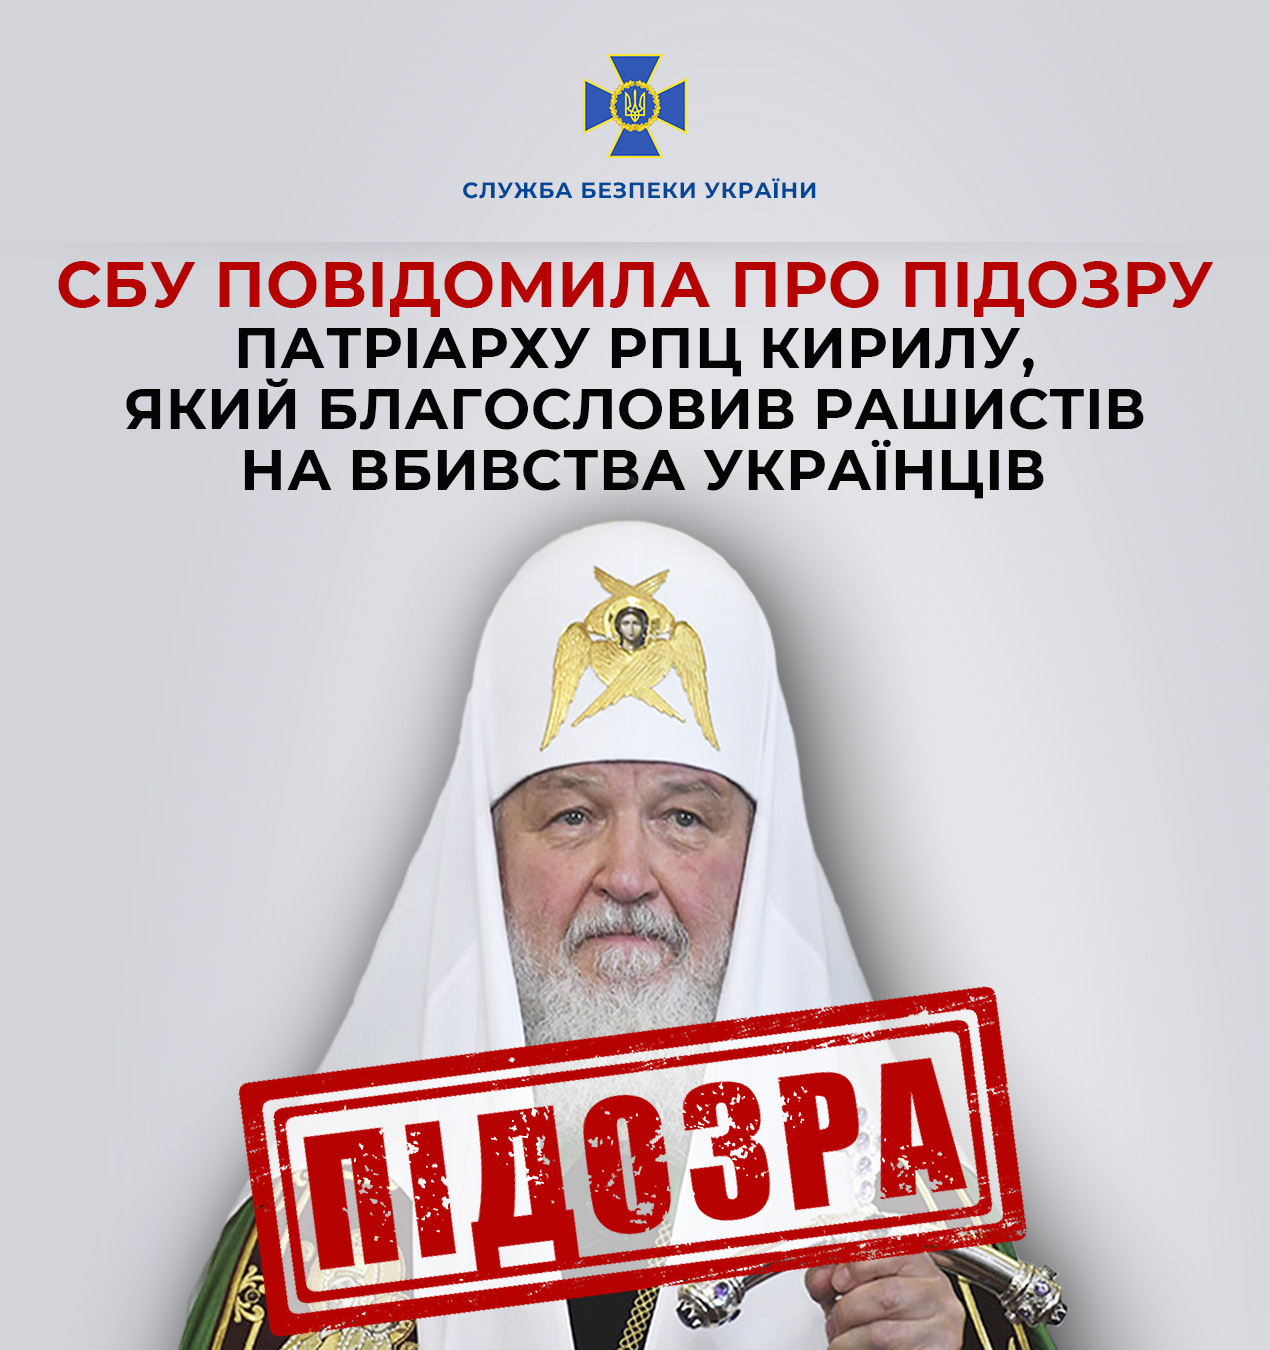 СБУ повідомила про підозру патріарху РПЦ Кирилу, який благословив рашистів на вбивства українців